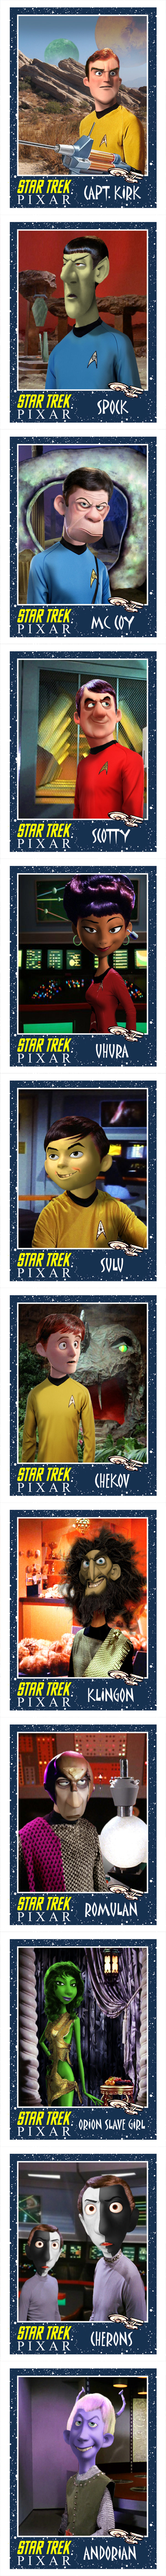 Personajes de Star Trek estilo Pixar